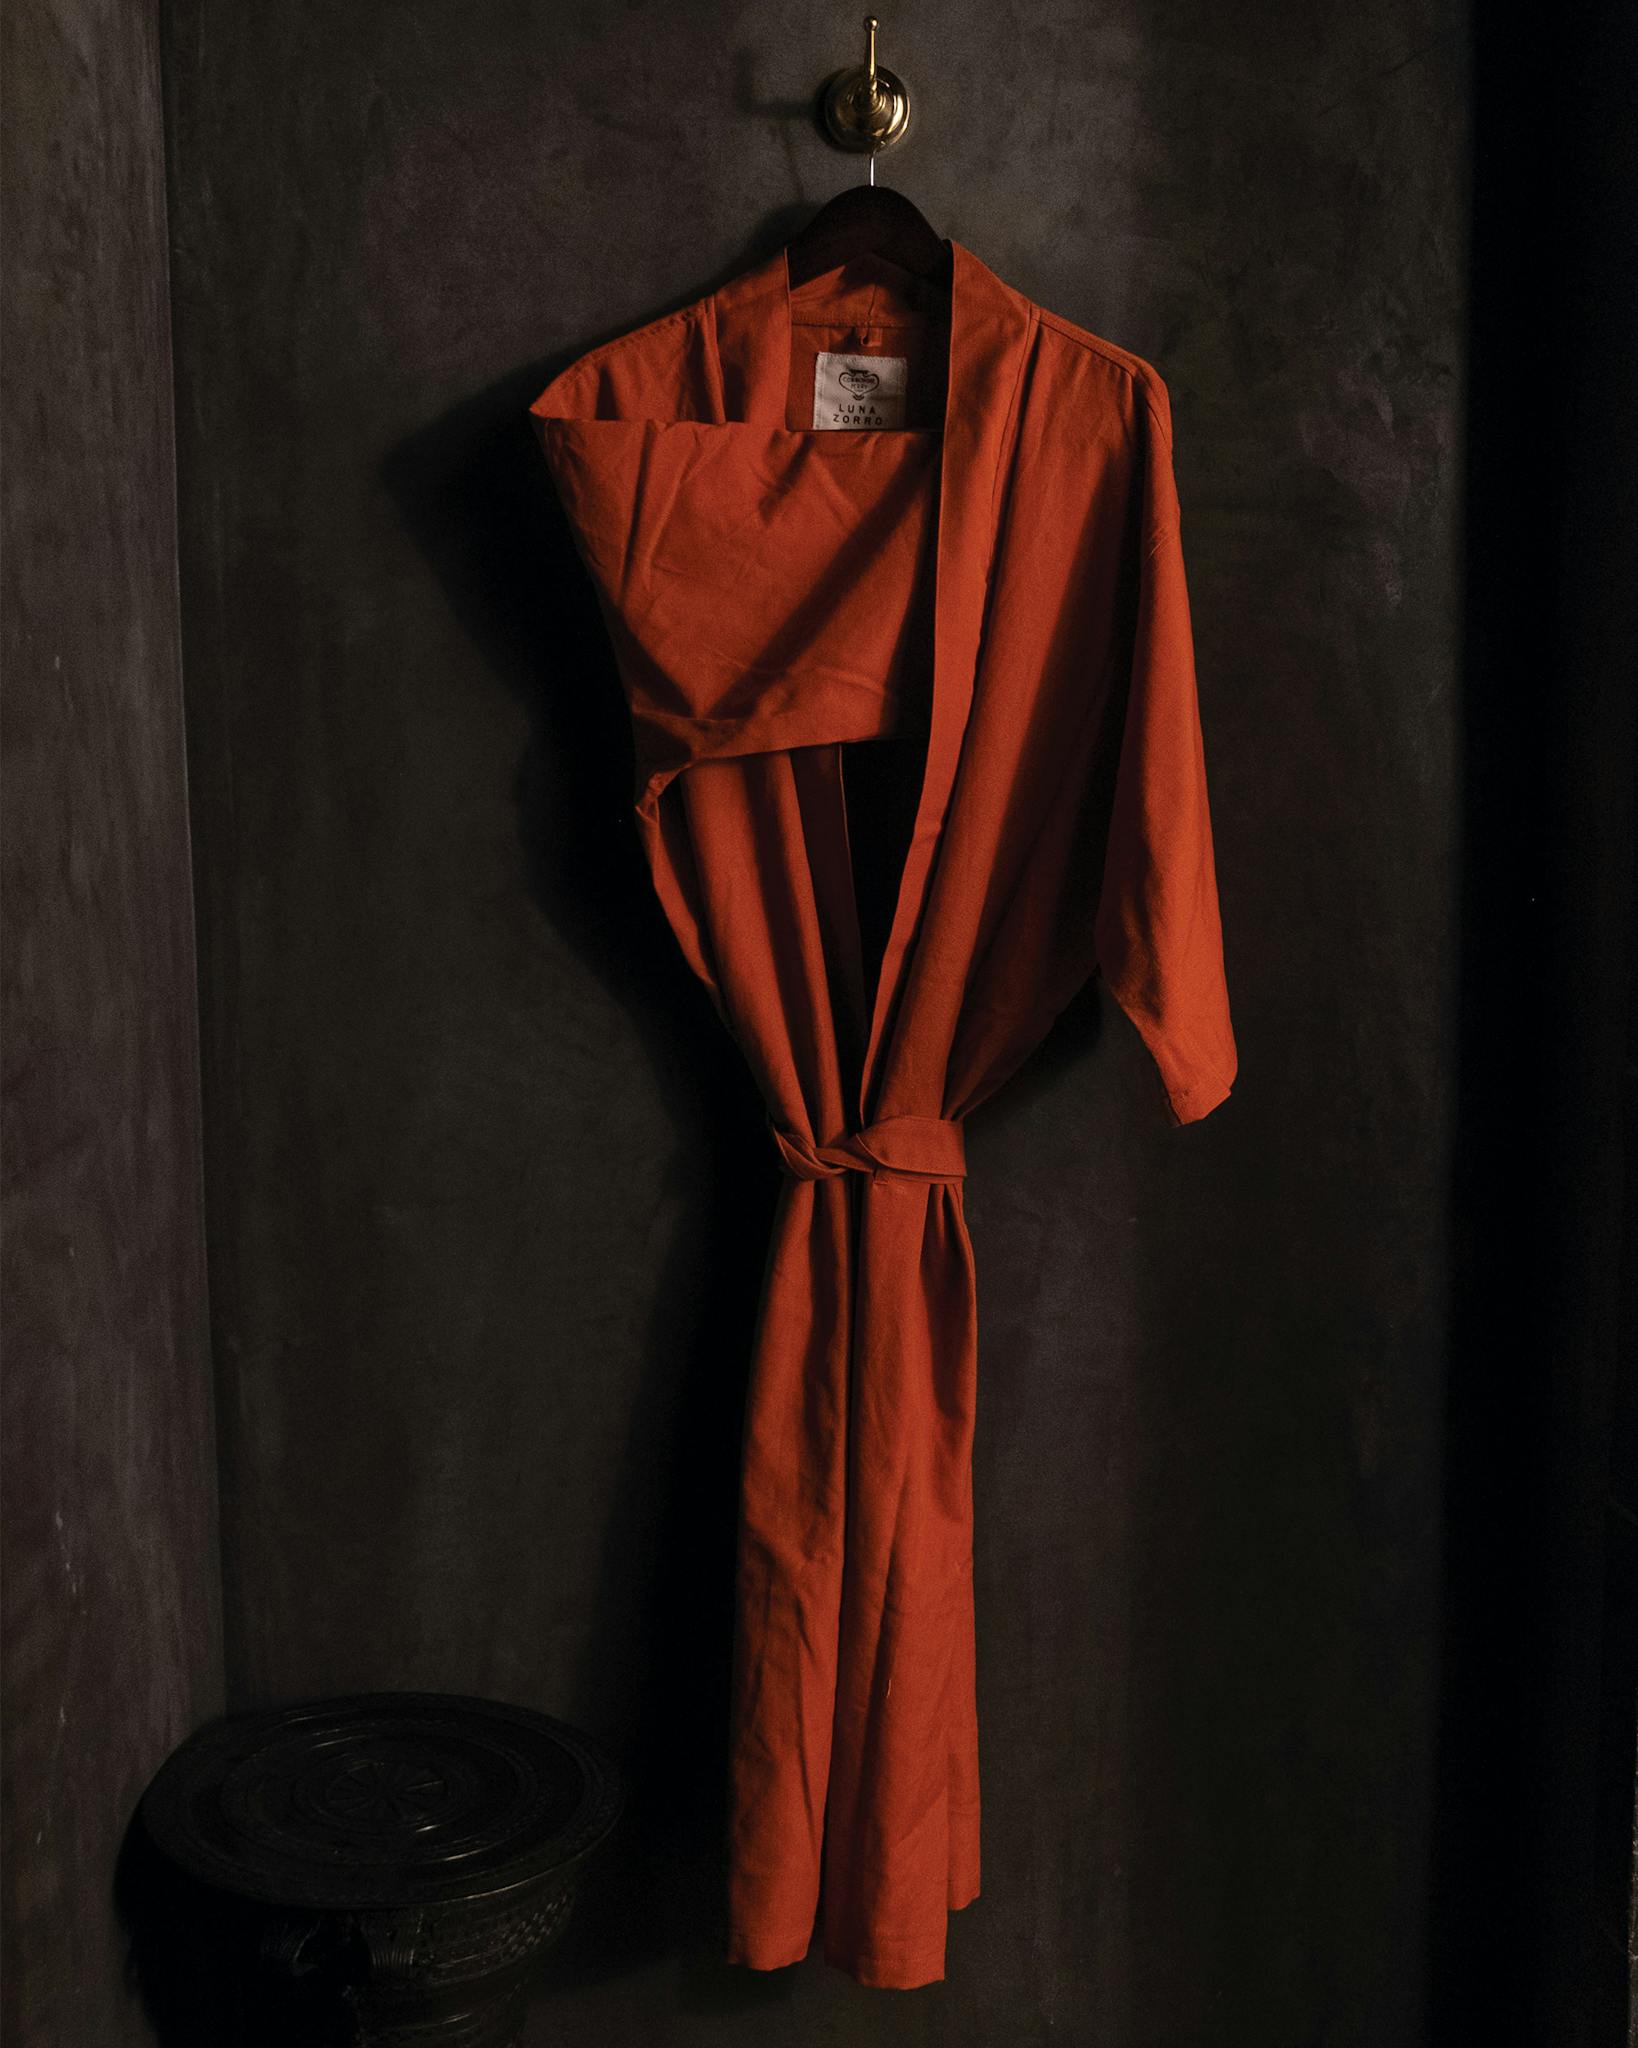 Hanging linen robe in the dark.